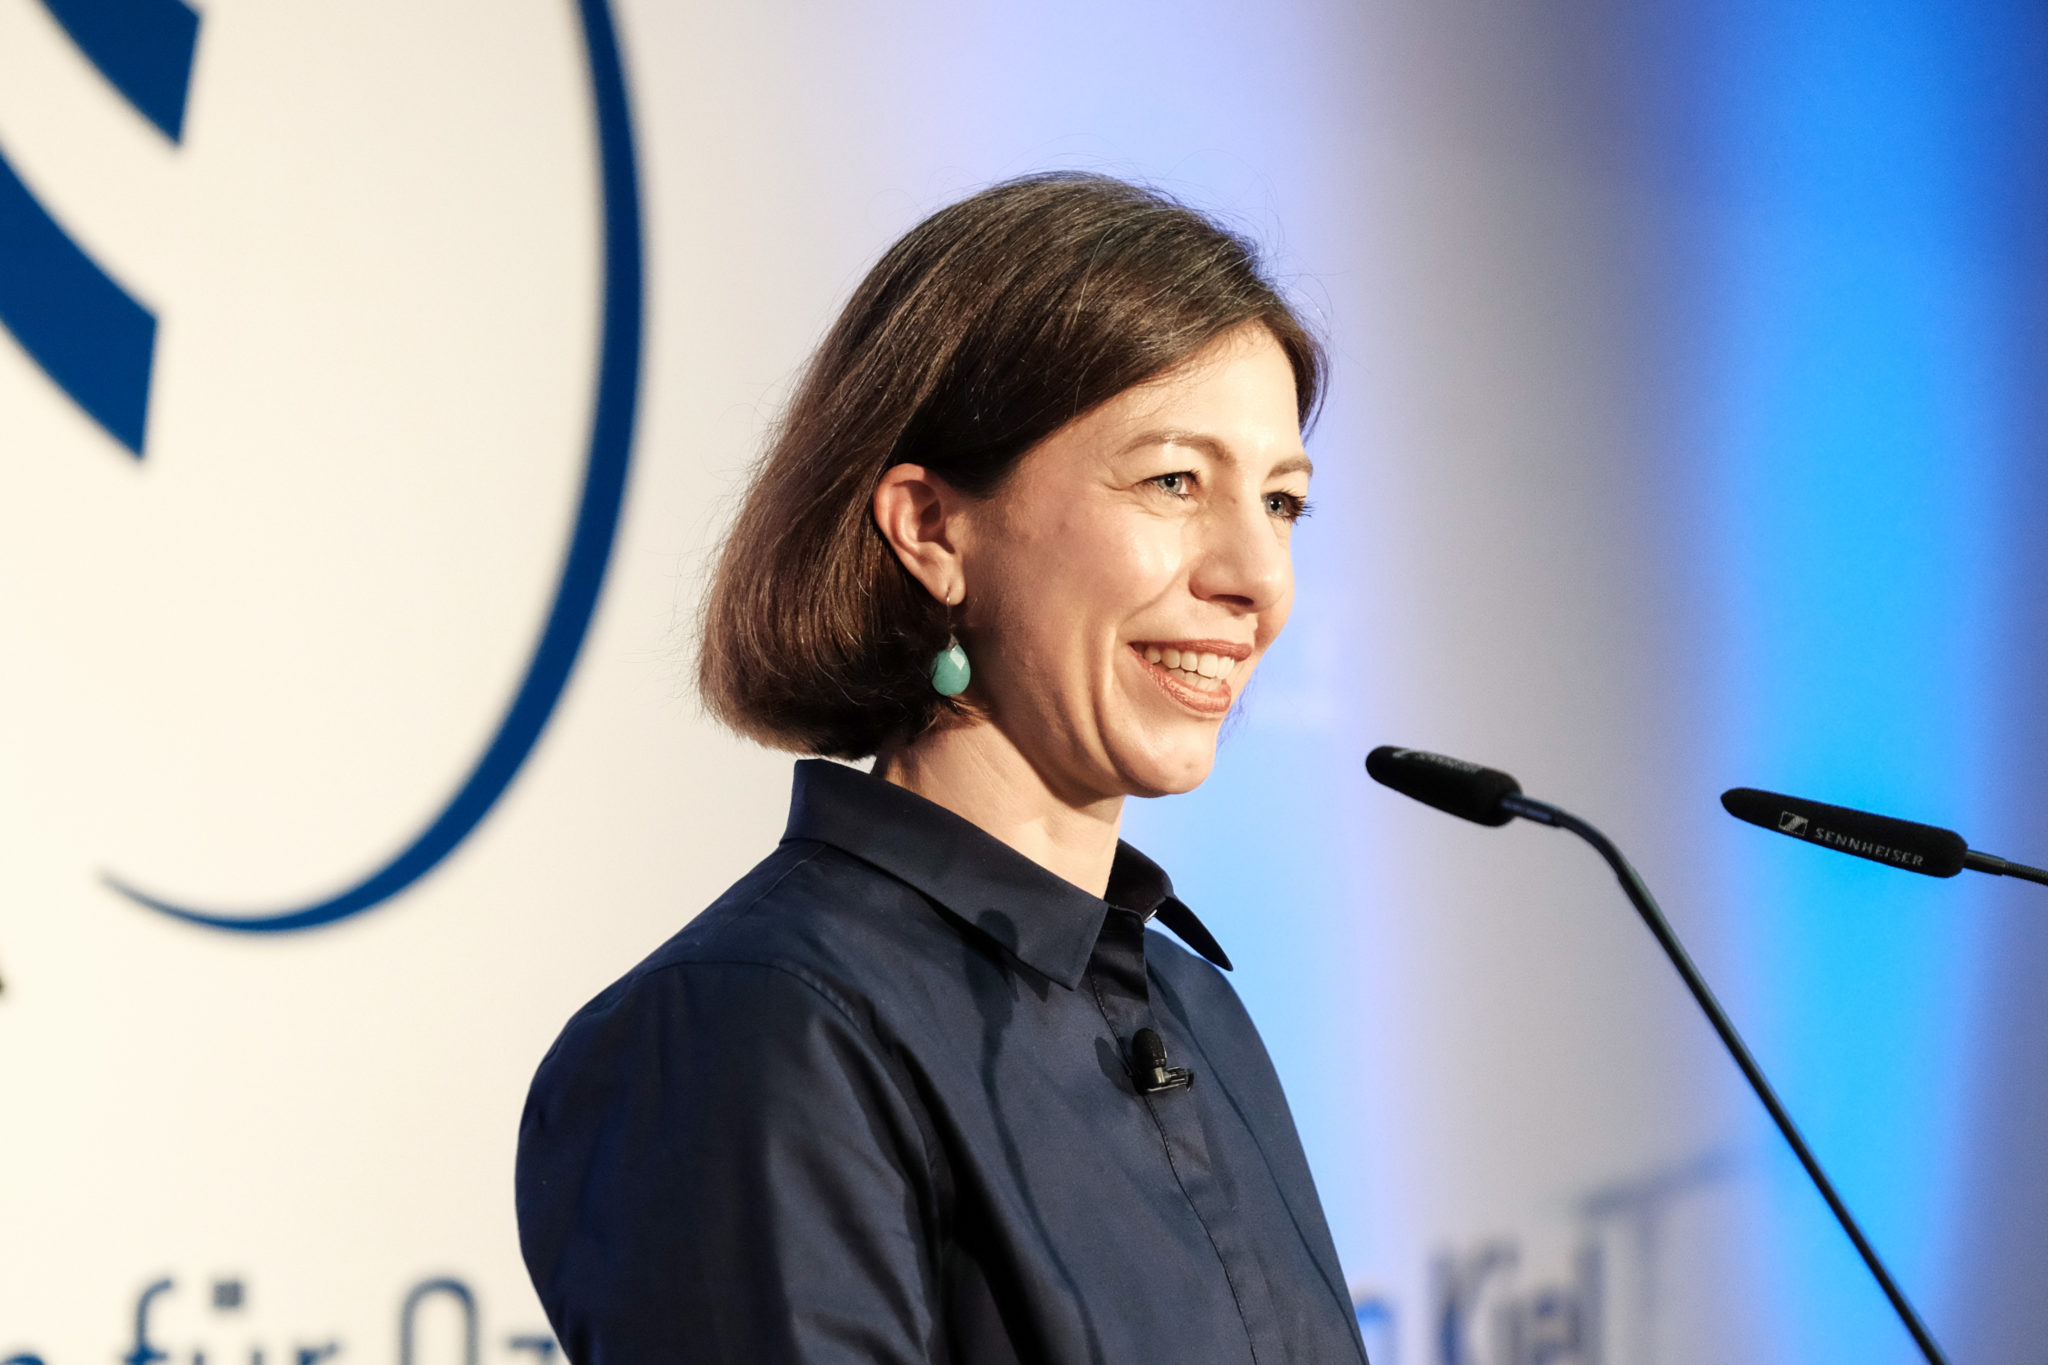 Professorin Katja Matthes stellt während der Amtseinführung ihre Vision für die Zukunft des GEOMAR vor